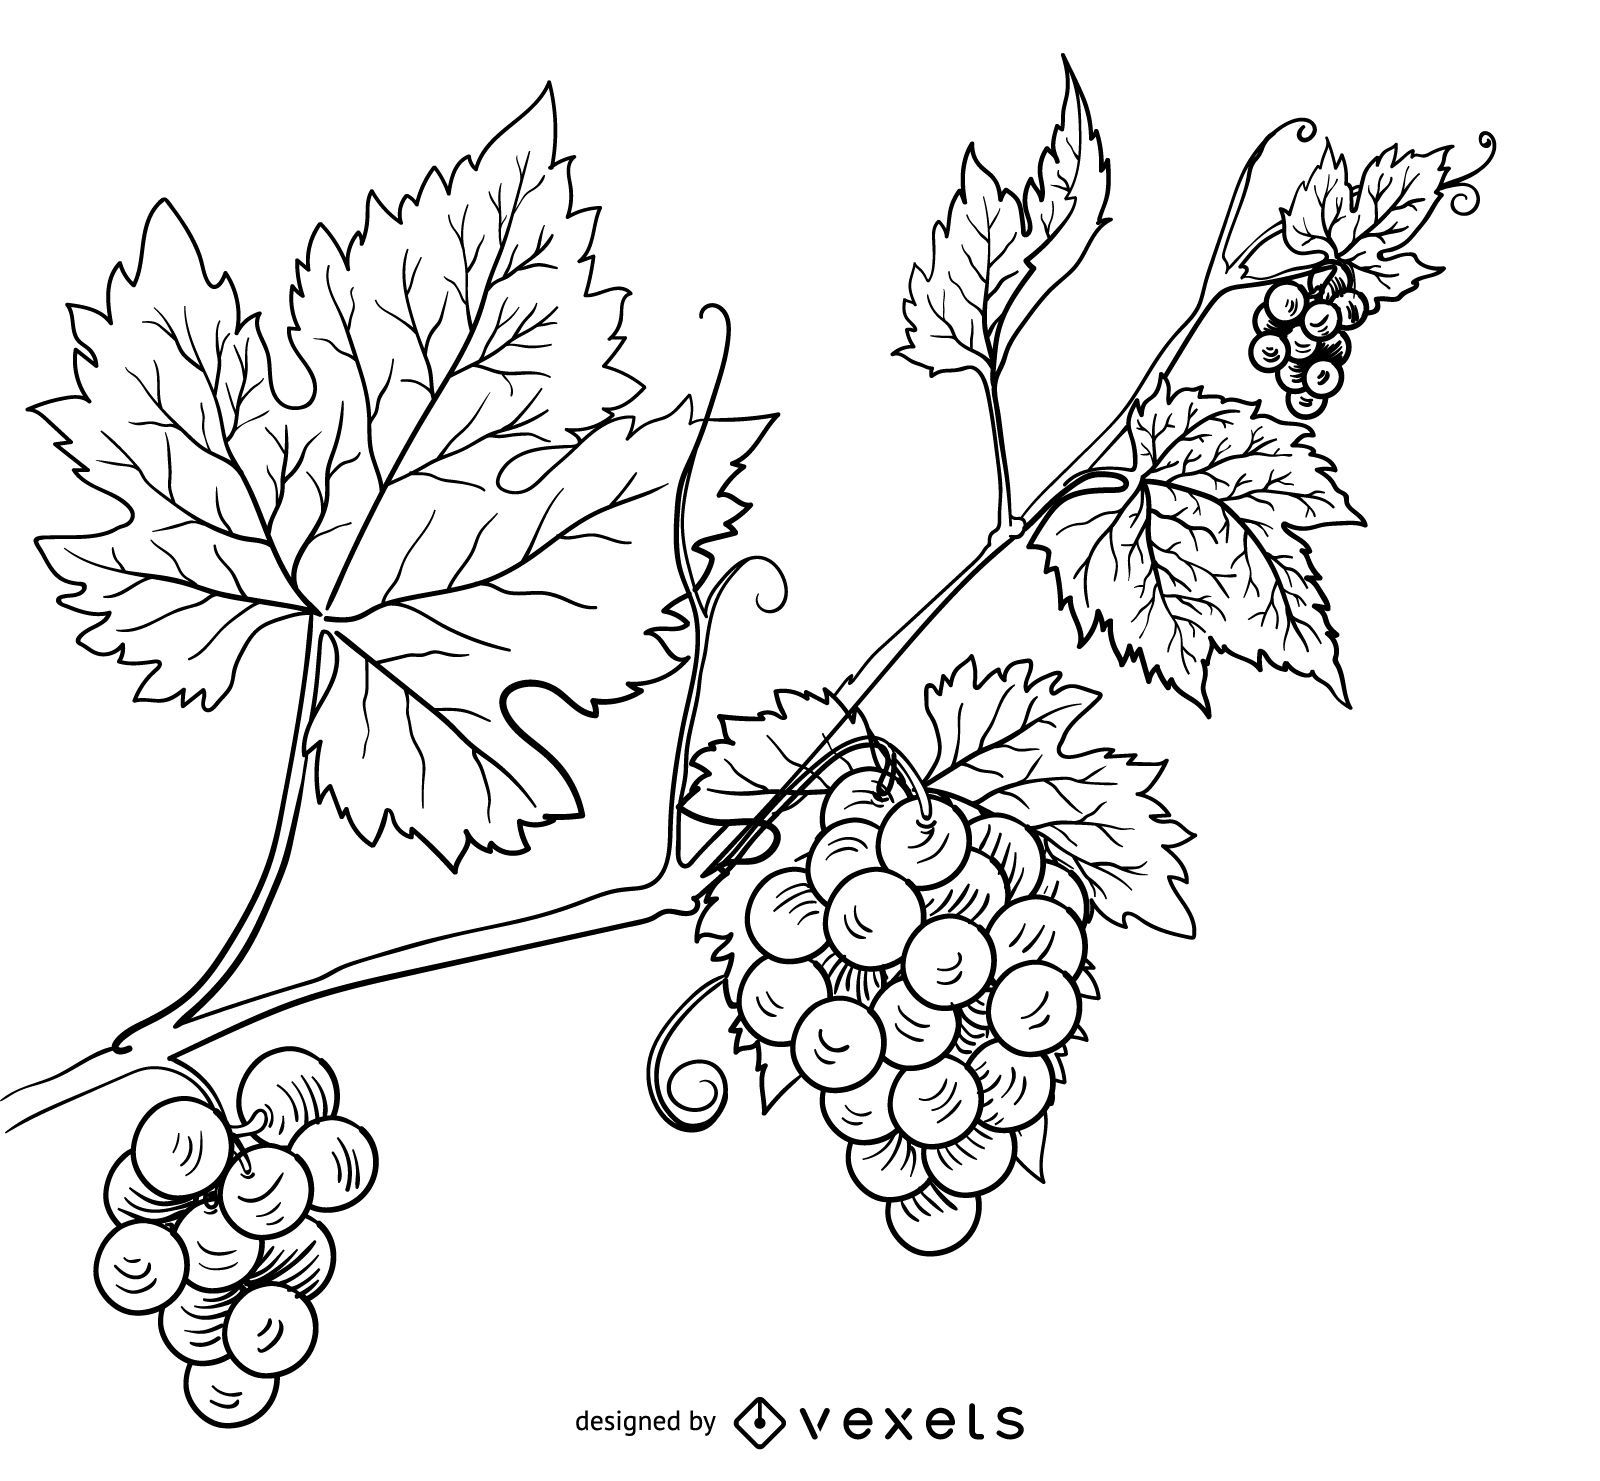 Hand gezeichnete Illustration der Weinrebe